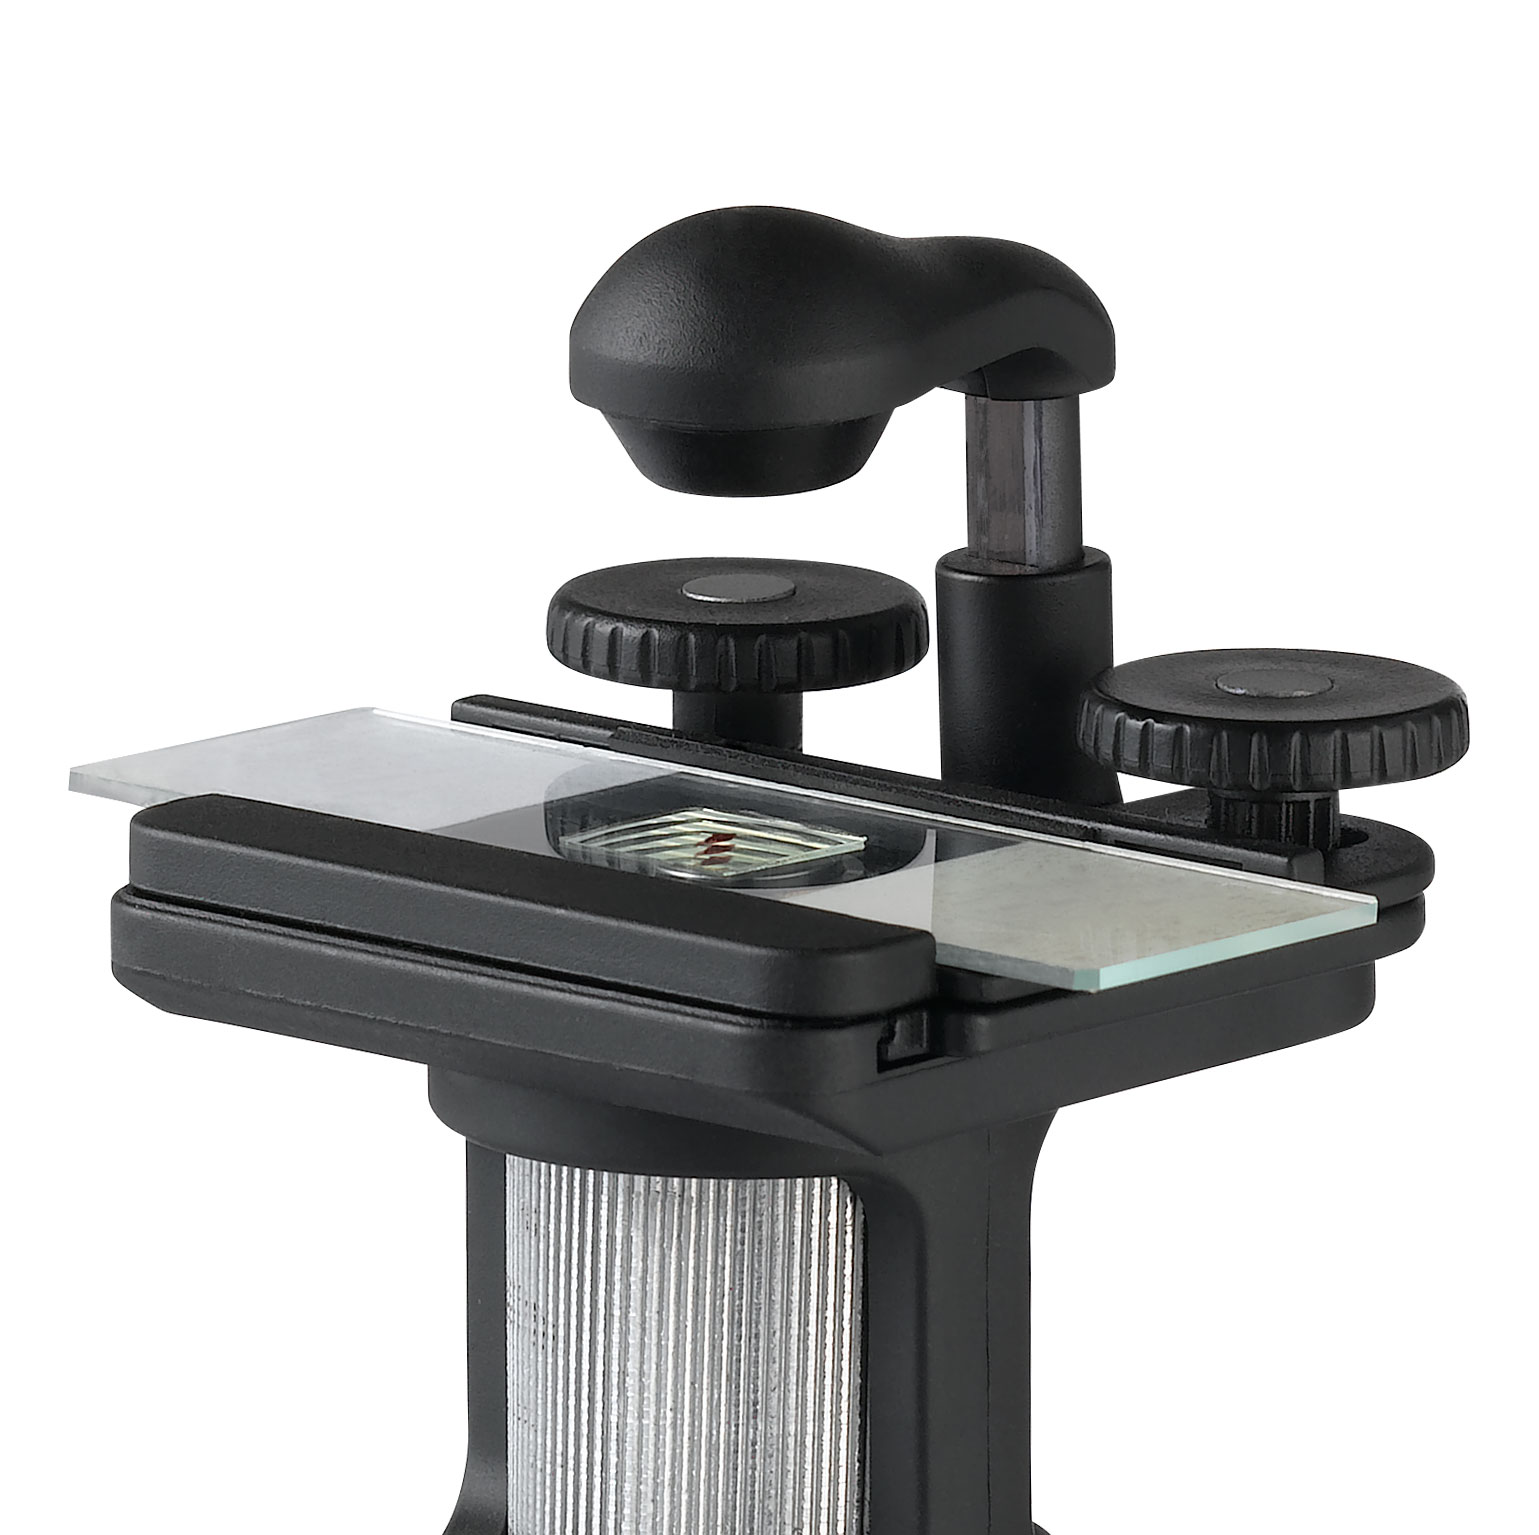 G001专业光学生物便携接电脑显微镜数码放大2000倍录像-3